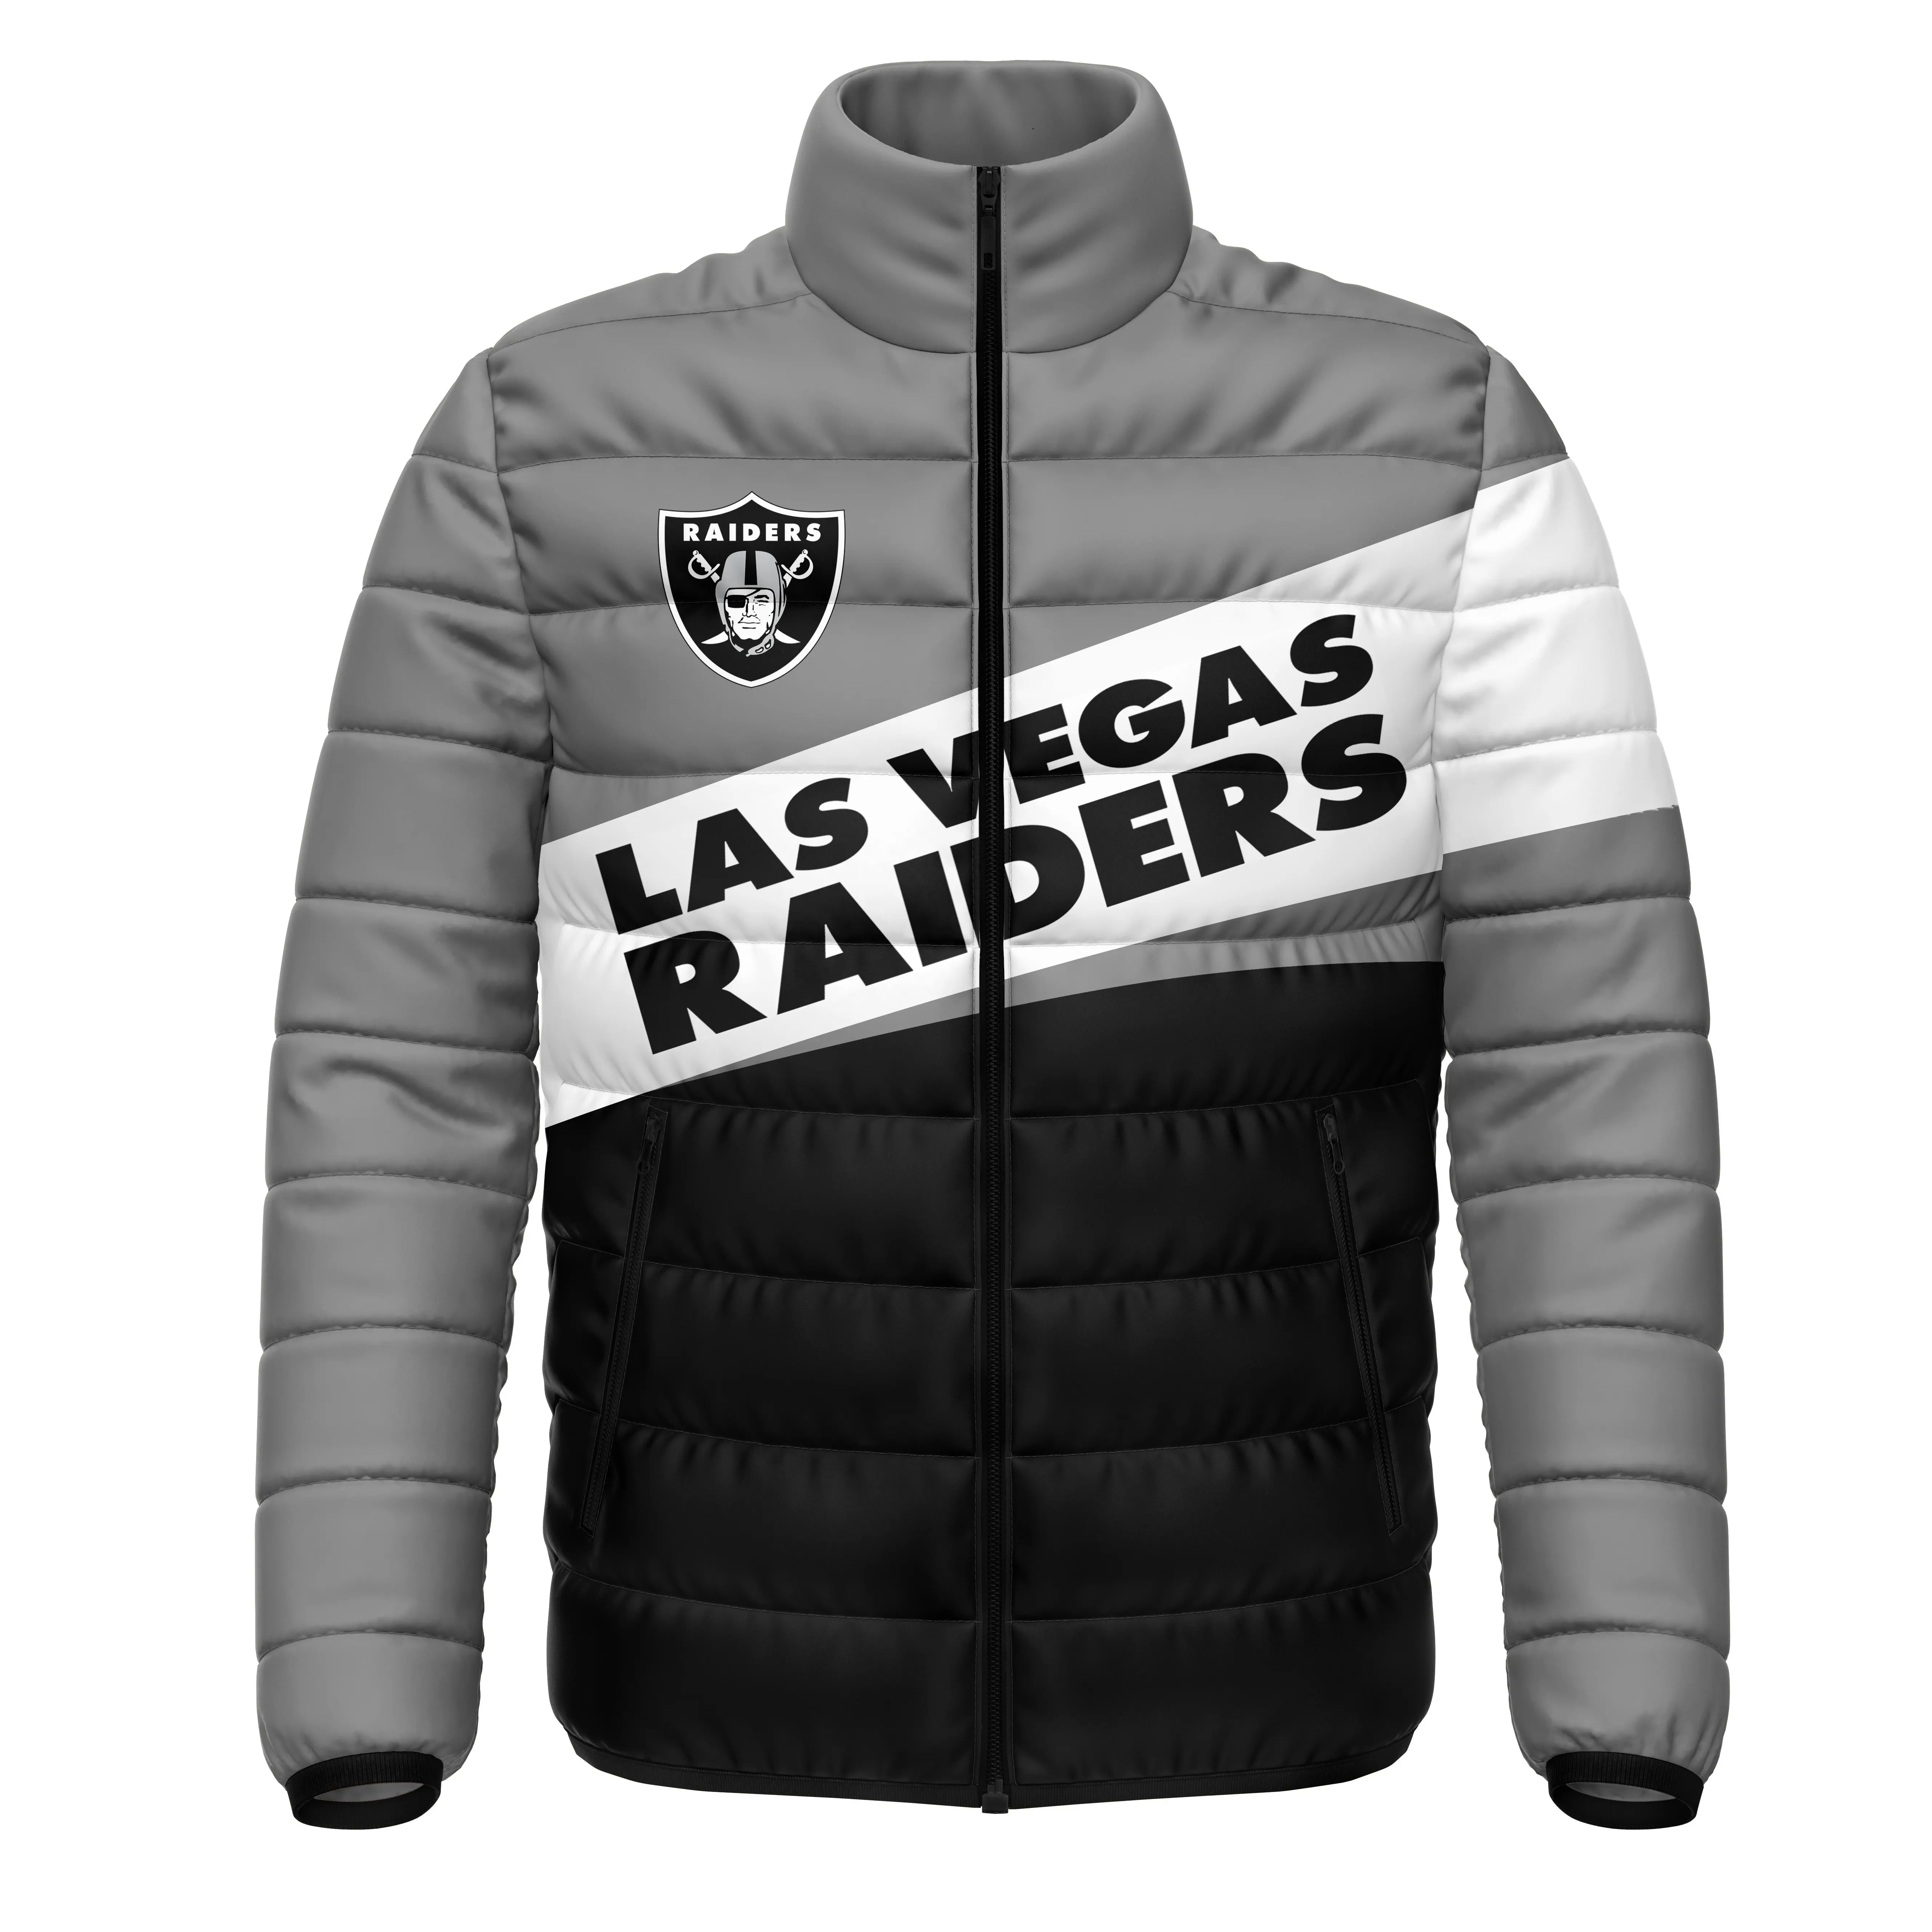 2021 пользовательские куртки-пуховики оптом Рекламные ветрозащитные НФЛ 32 команды Лас-Вегас куртки-пуховики для мужчин